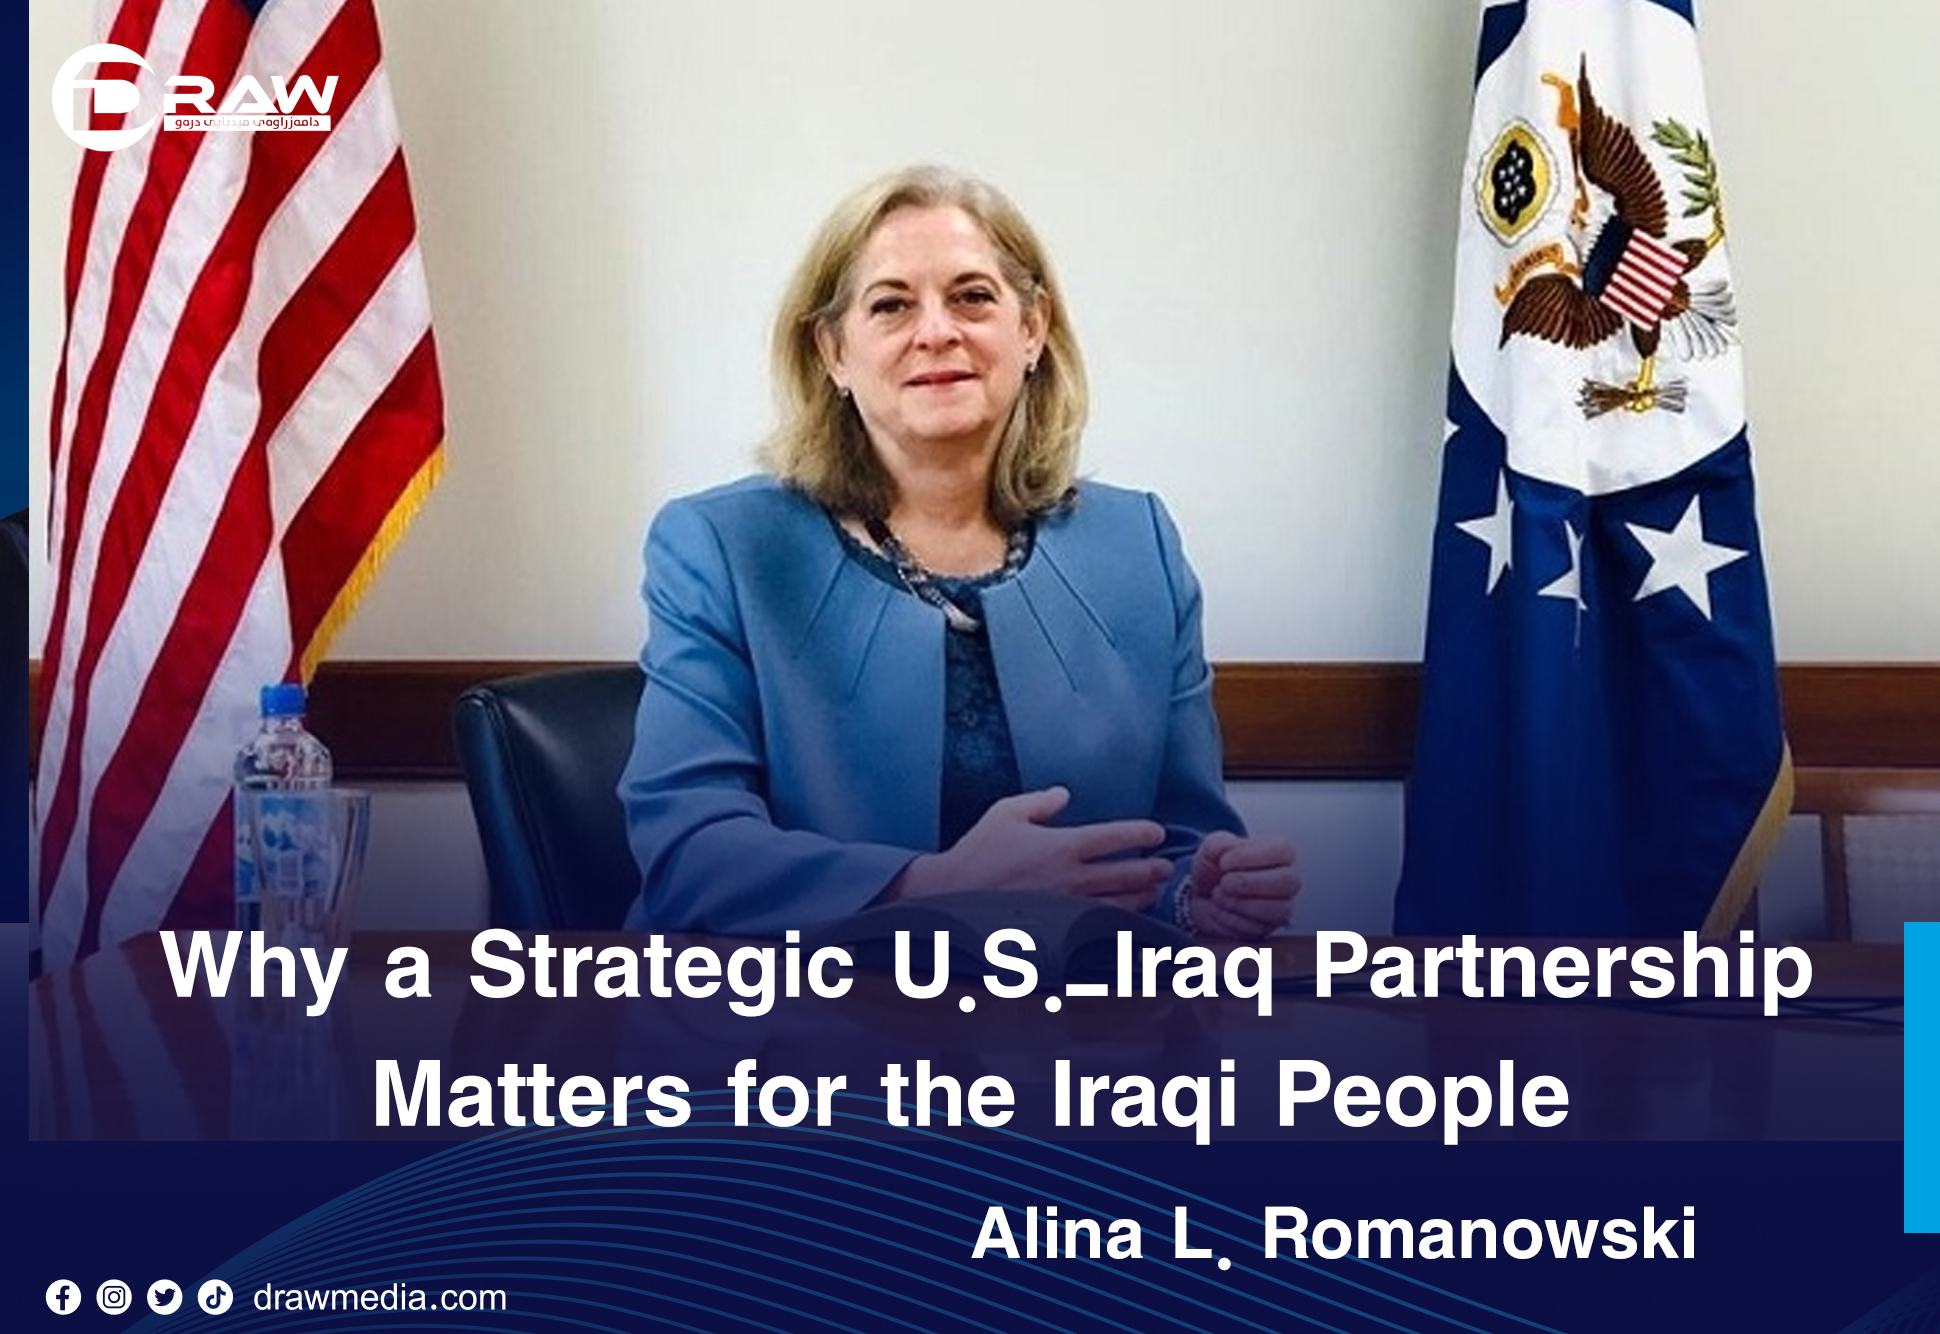 Draw Media- Why a Strategic U.S.-Iraq Partnership Matters for the Iraqi People